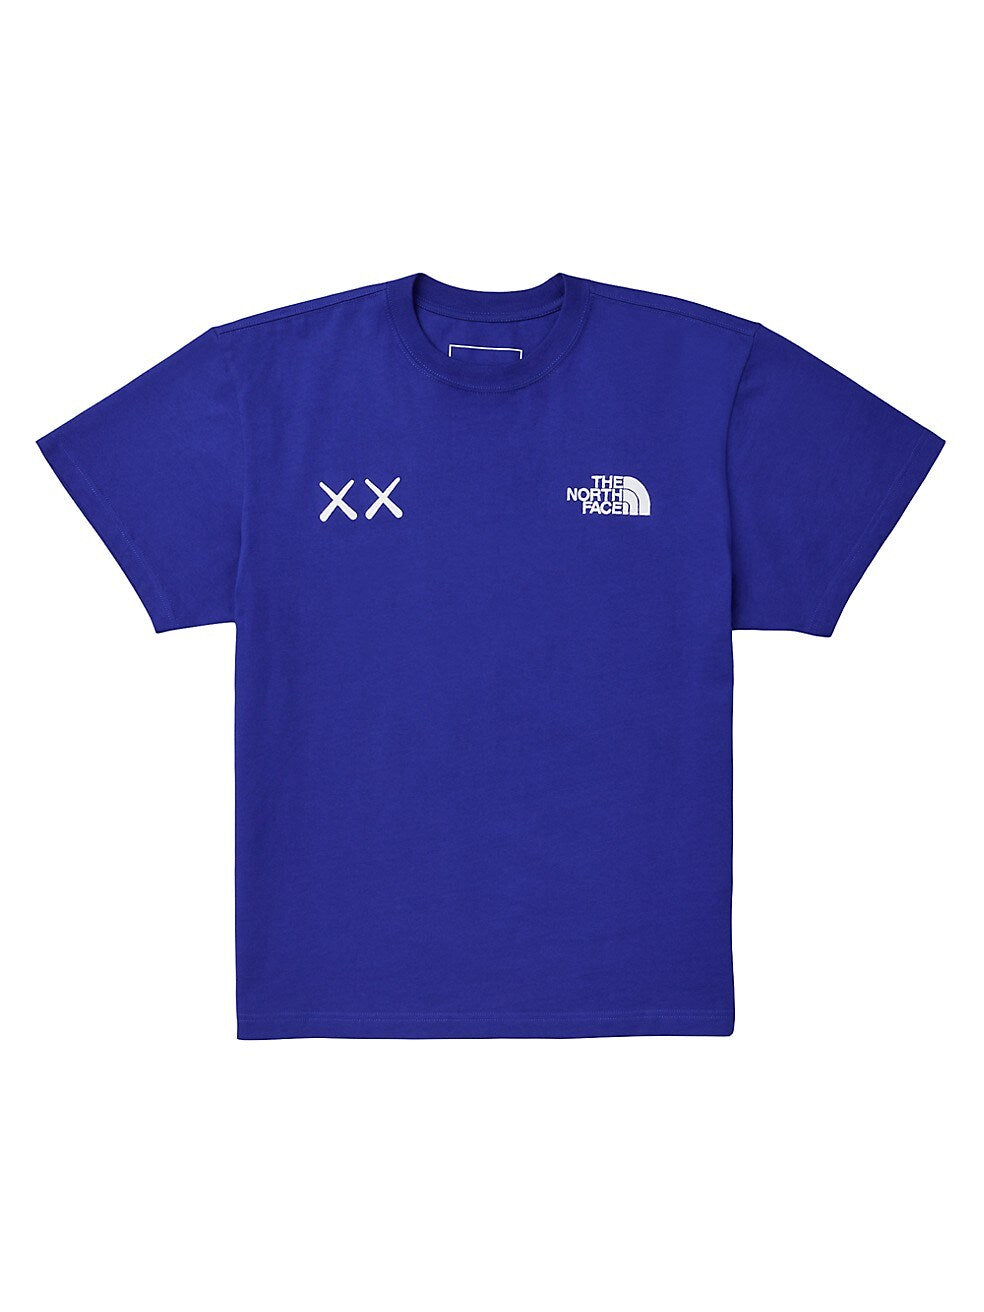 Kaws x The North Face T-Shirt Bolt Blue